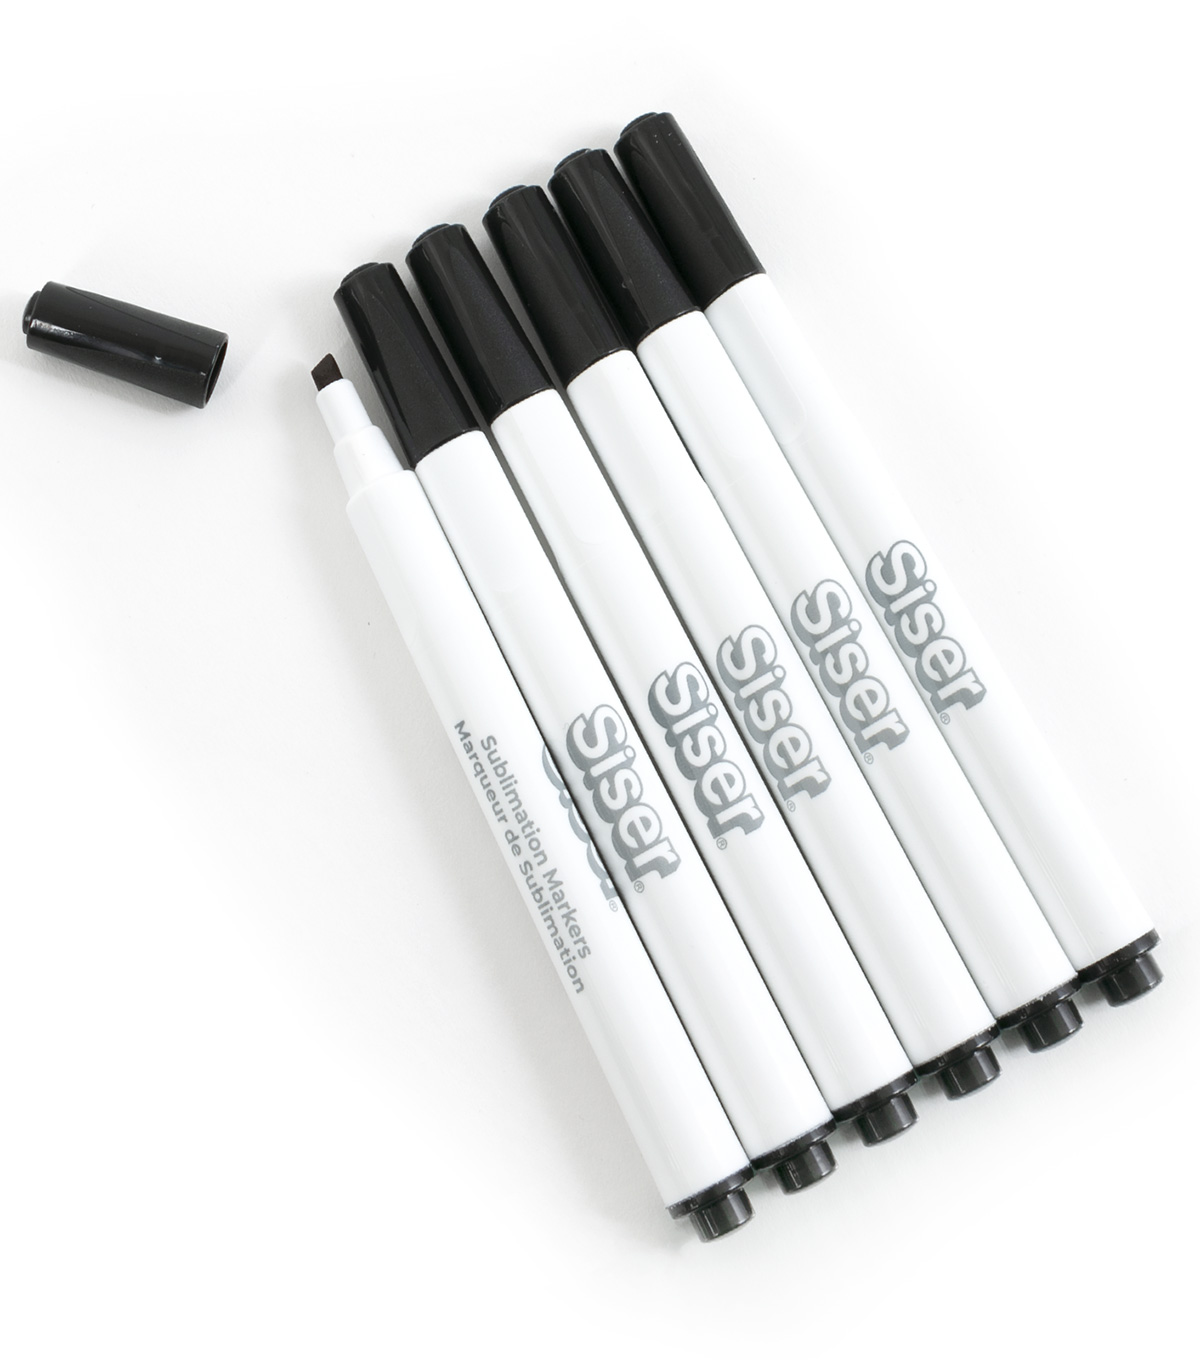 Siser Sublimation Markers, Black Pack